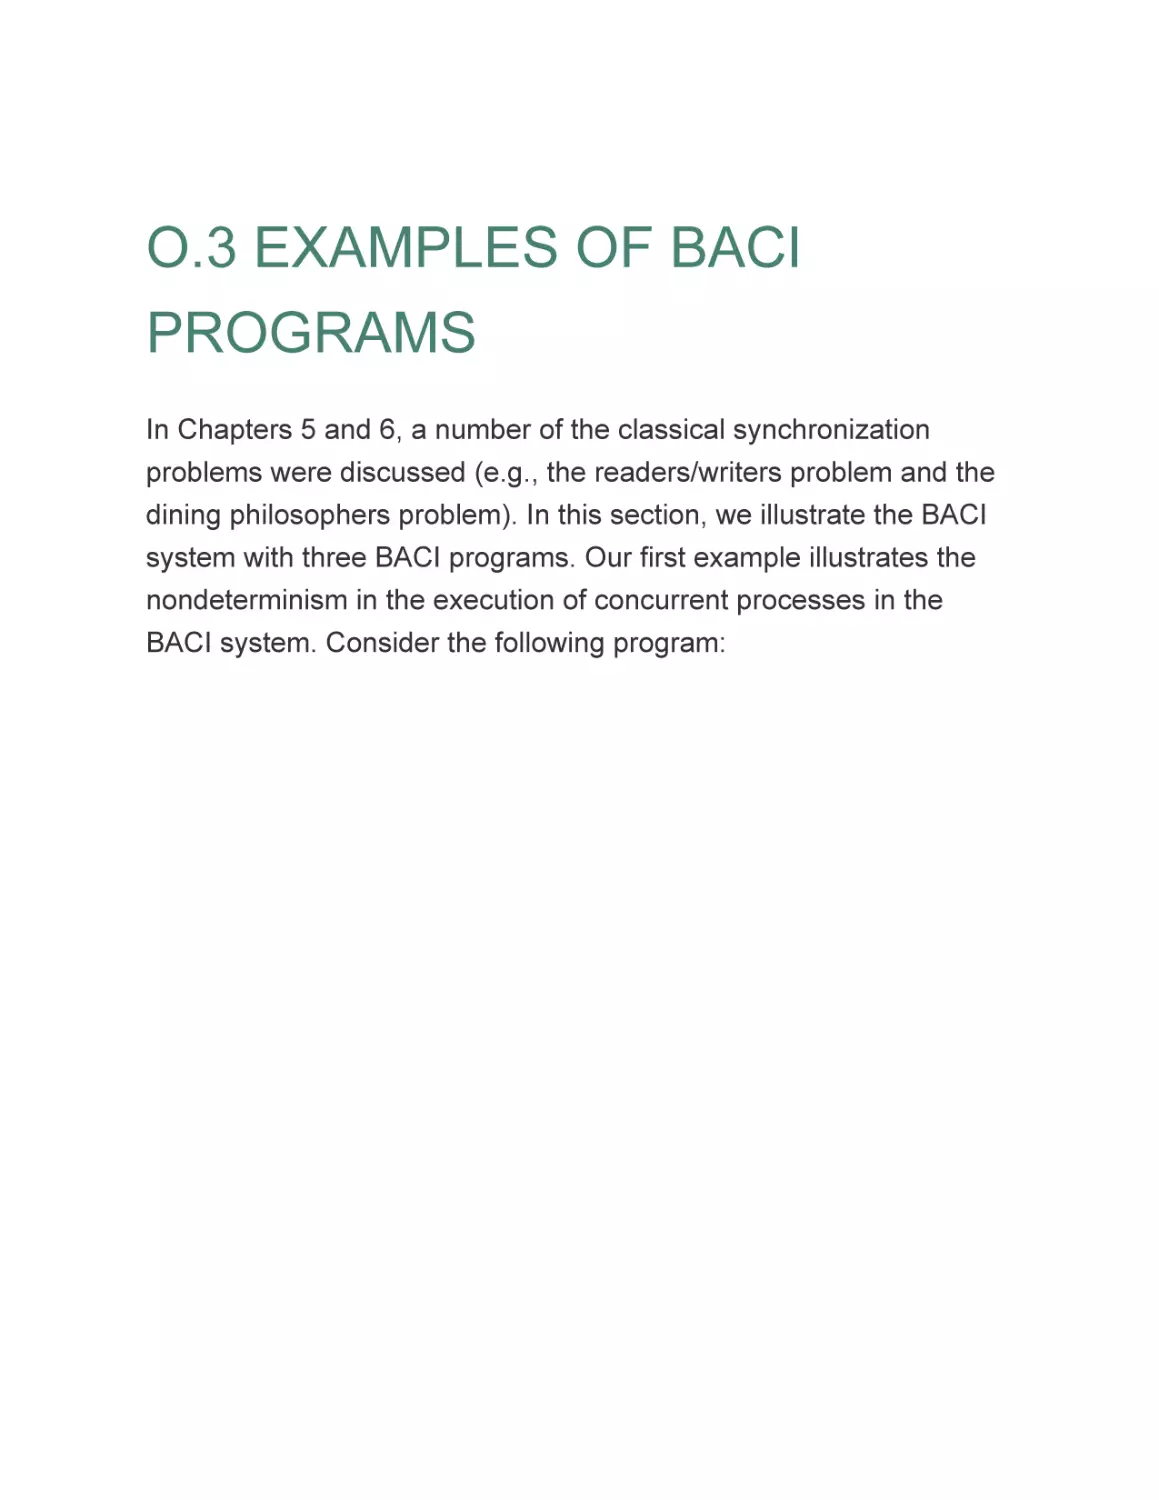 O.3 EXAMPLES OF BACI PROGRAMS